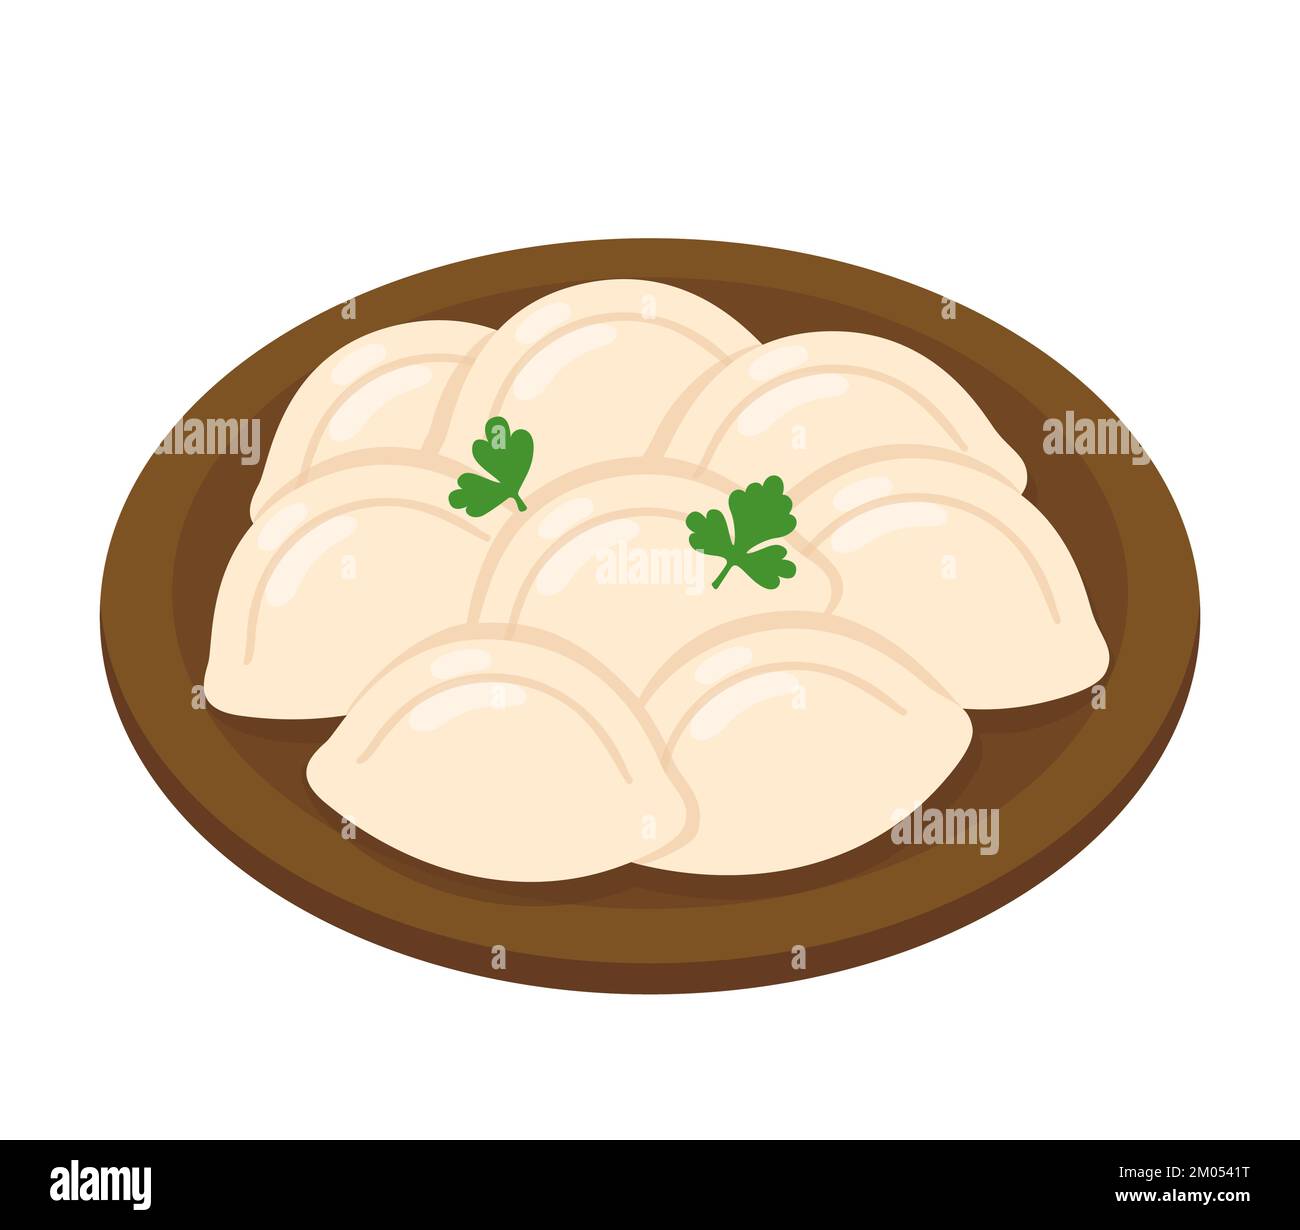 Boulettes traditionnelles d'Europe orientale pierogi ou varenyky sur une assiette. Illustration vectorielle de dessin animé. Illustration de Vecteur